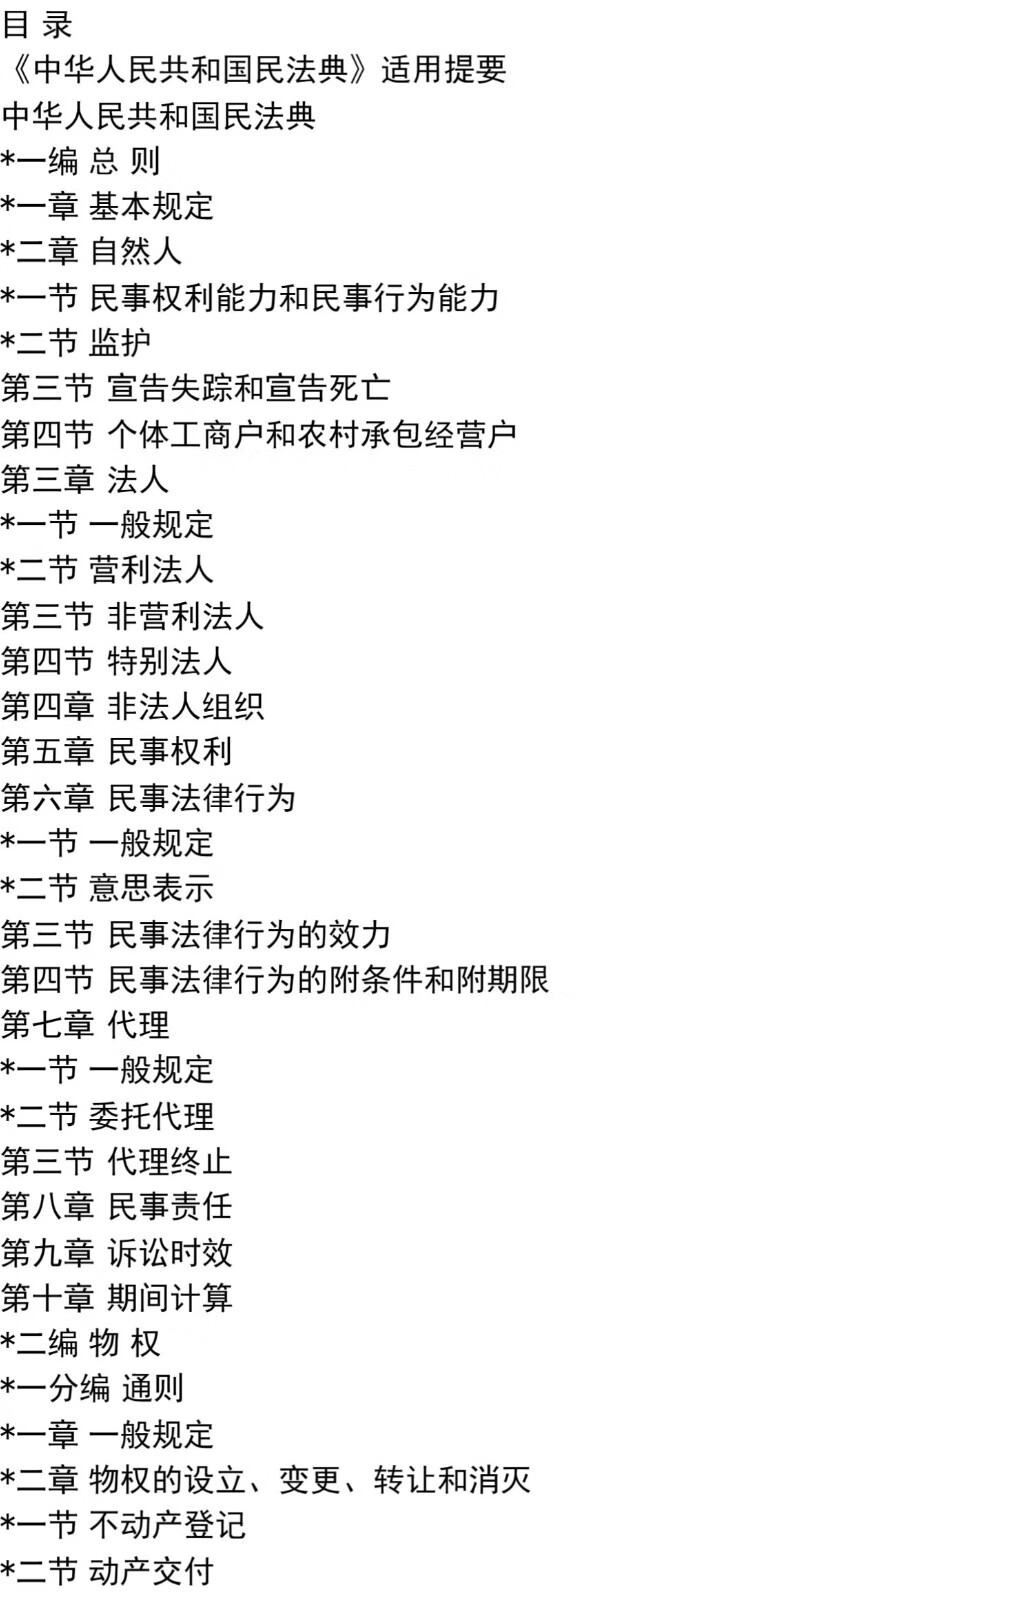 中华人民共和国民法典(64开红皮便携版)民法百科全书法制 中华人民共和国民法典(便携版)